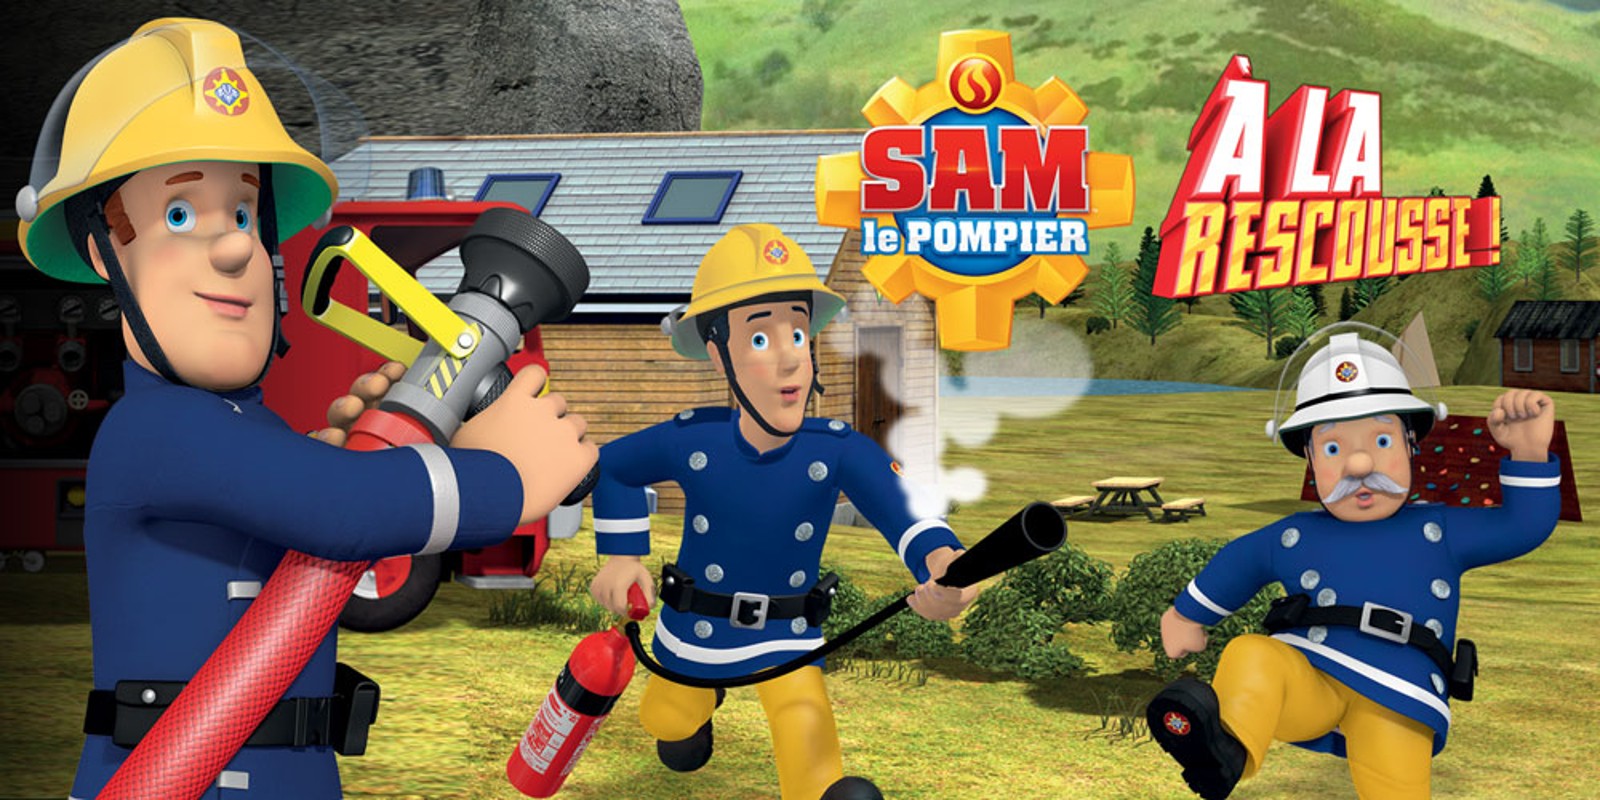 Sam le Pompier A la rescousse!